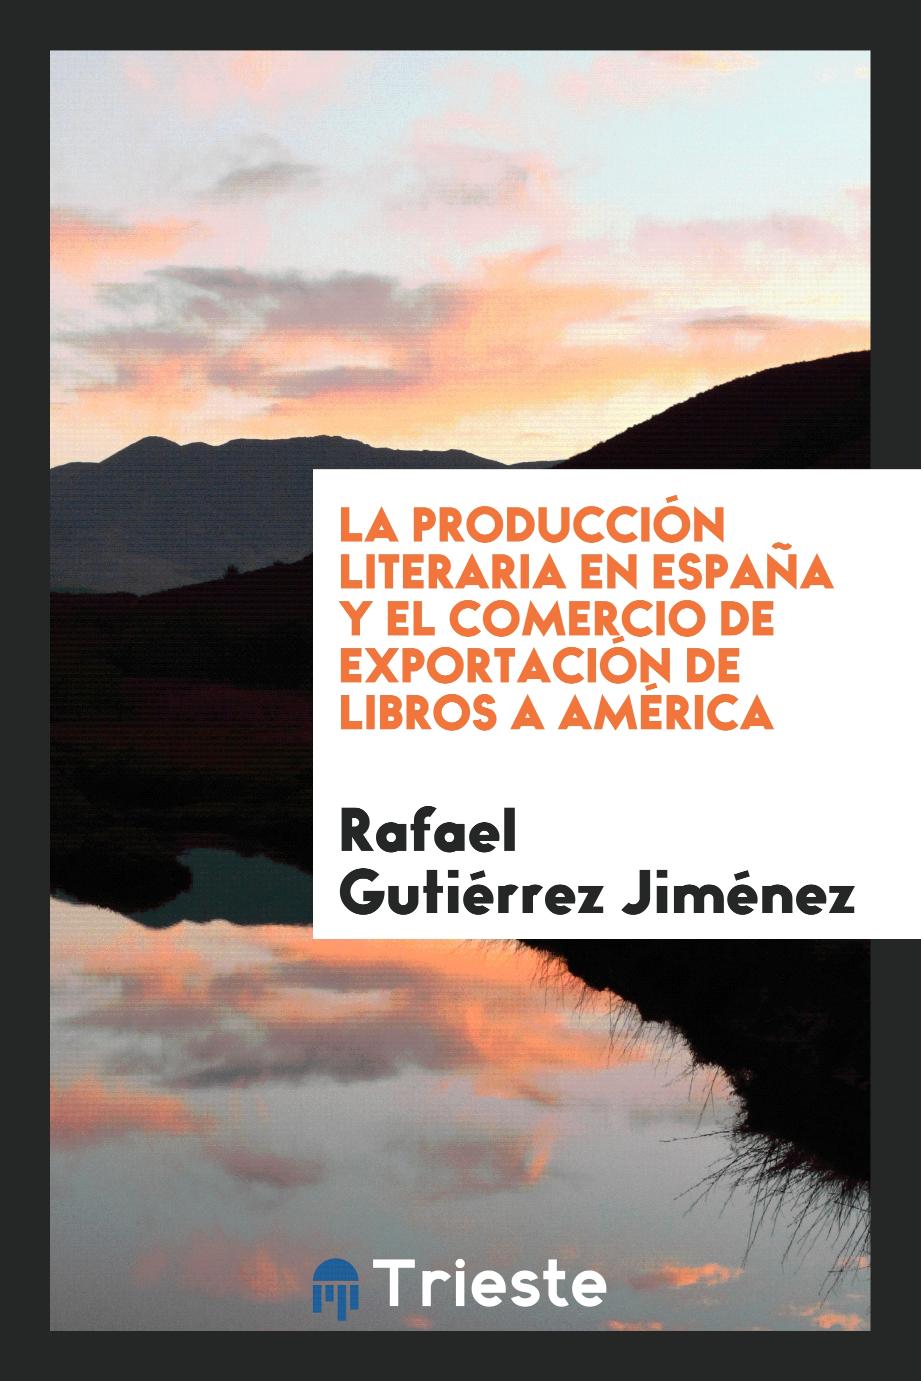 La Producción Literaria en España y el Comercio de Exportación de Libros a América